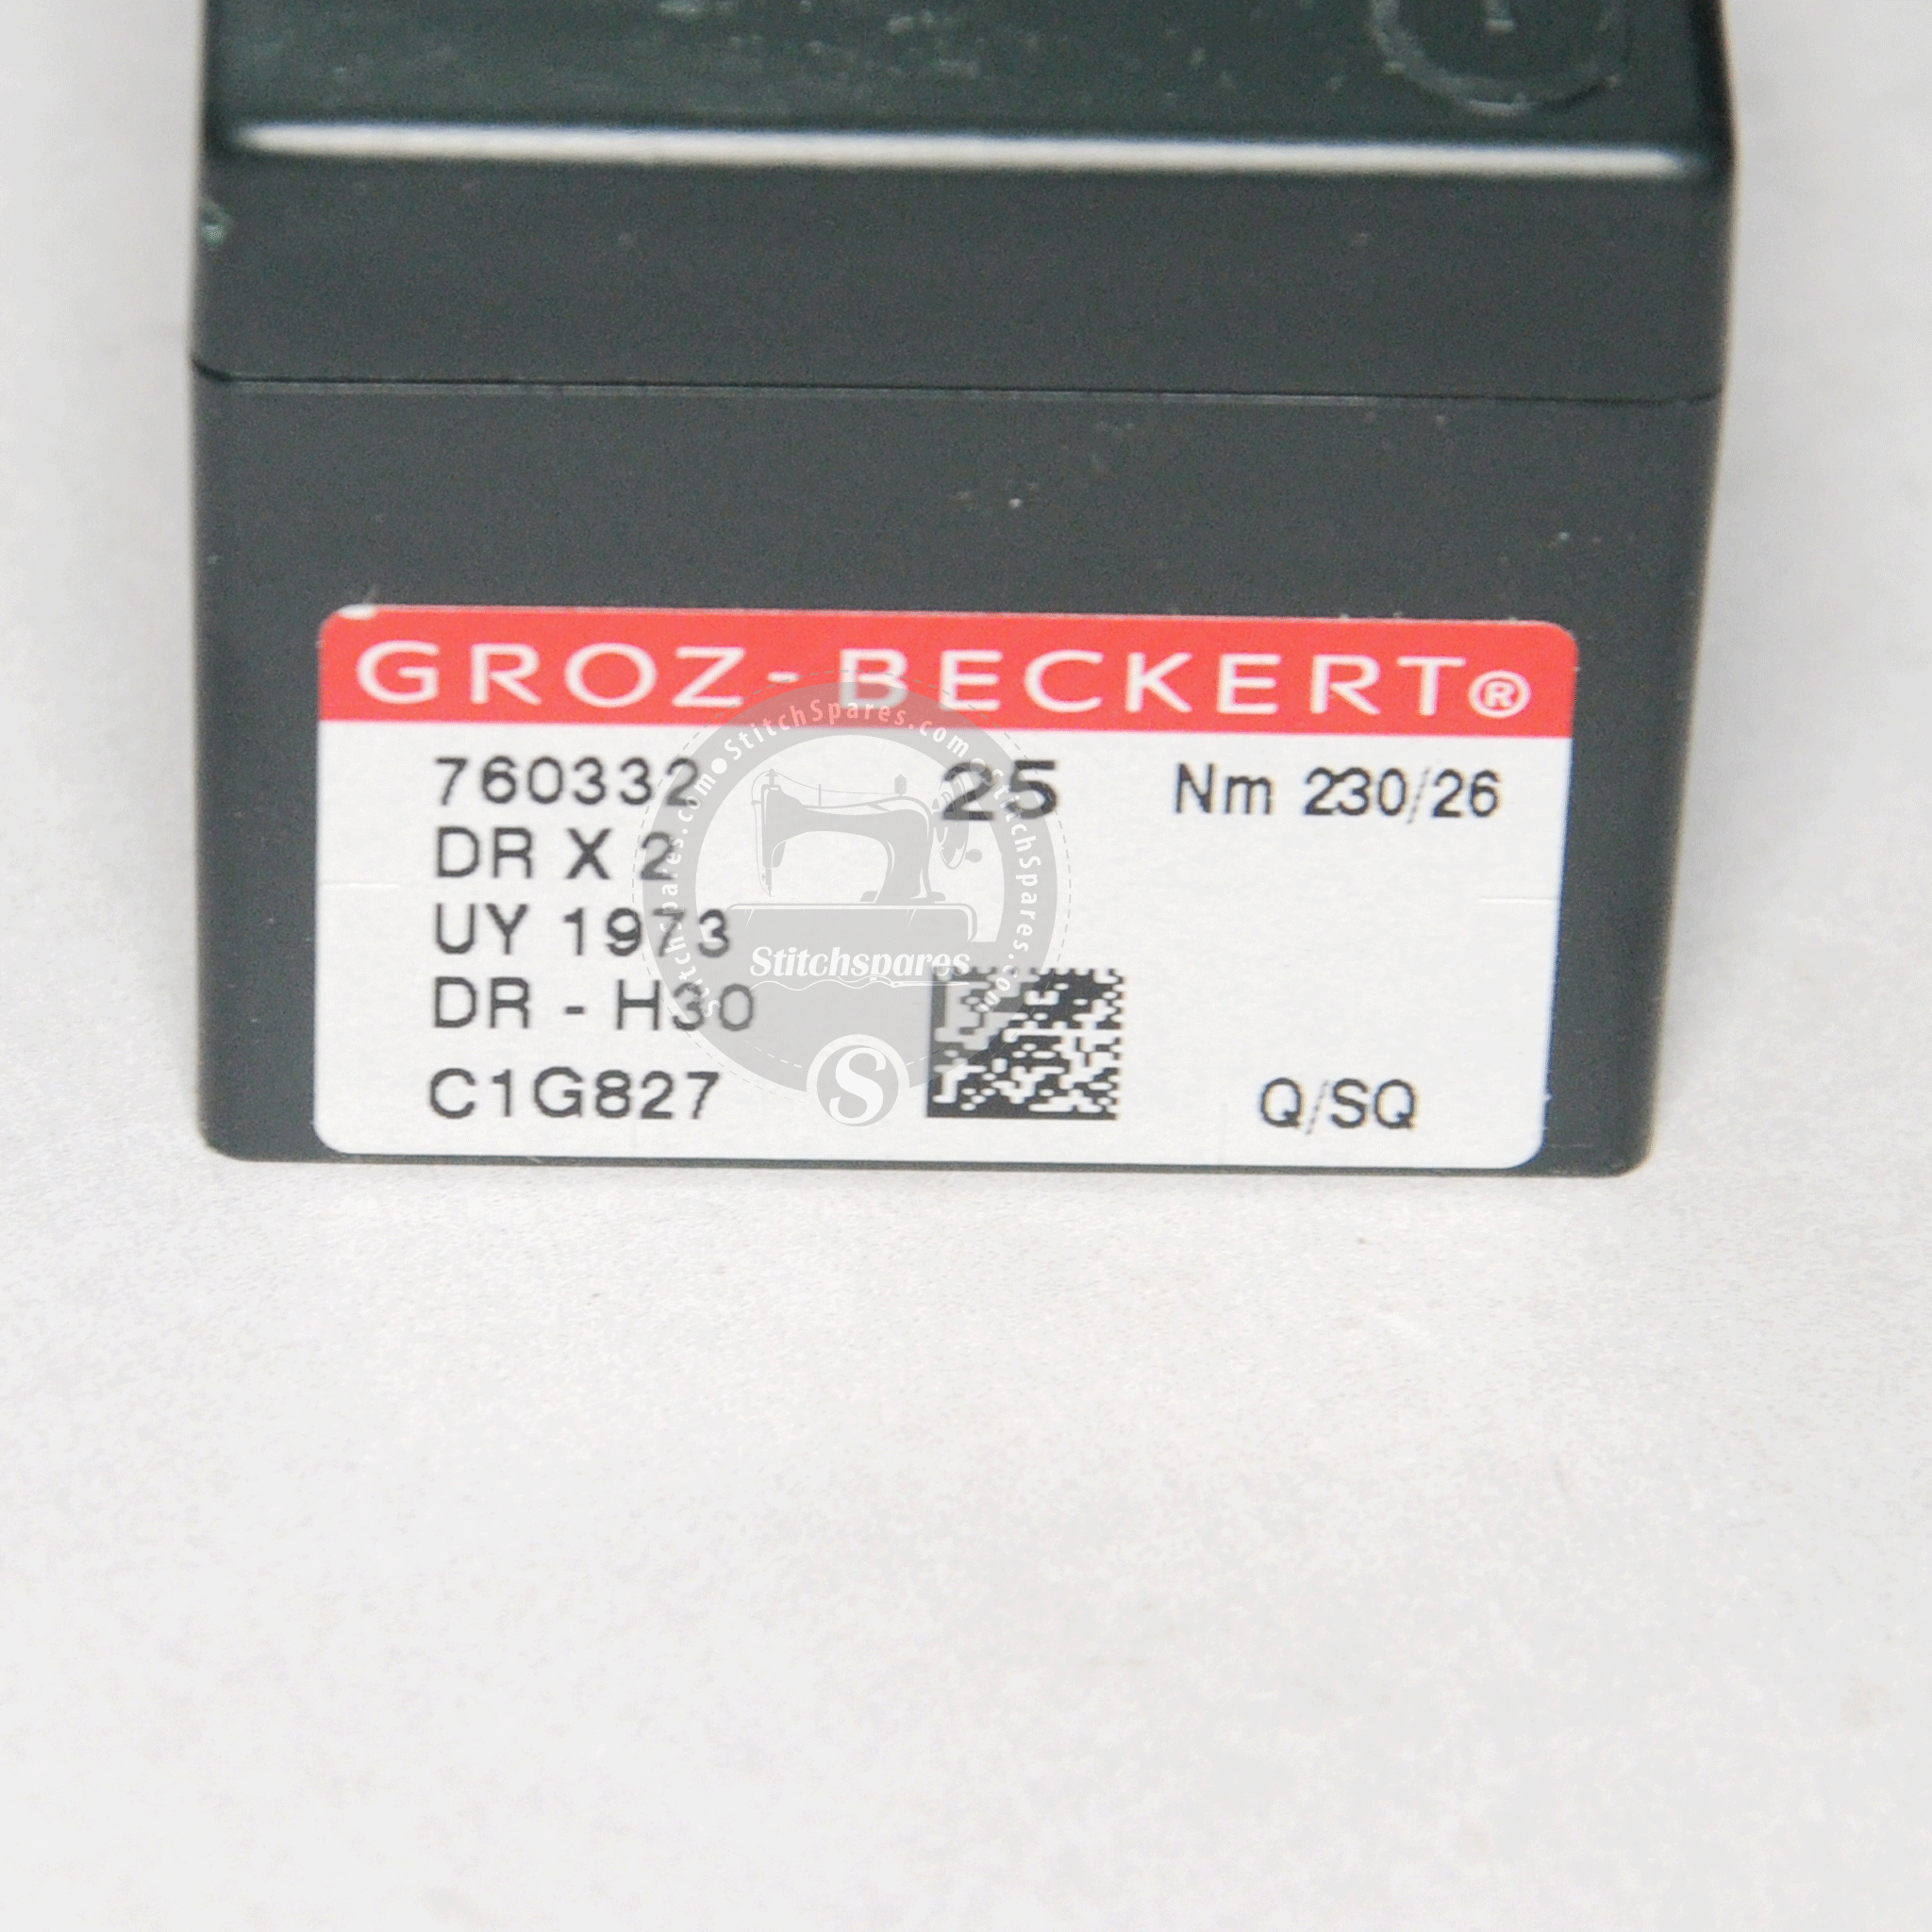 DRX2 UY 1973 SY5060 124X2 Groz Beckert Nadel für Beutelschließmaschine (PACK MIT 25 NADELN)